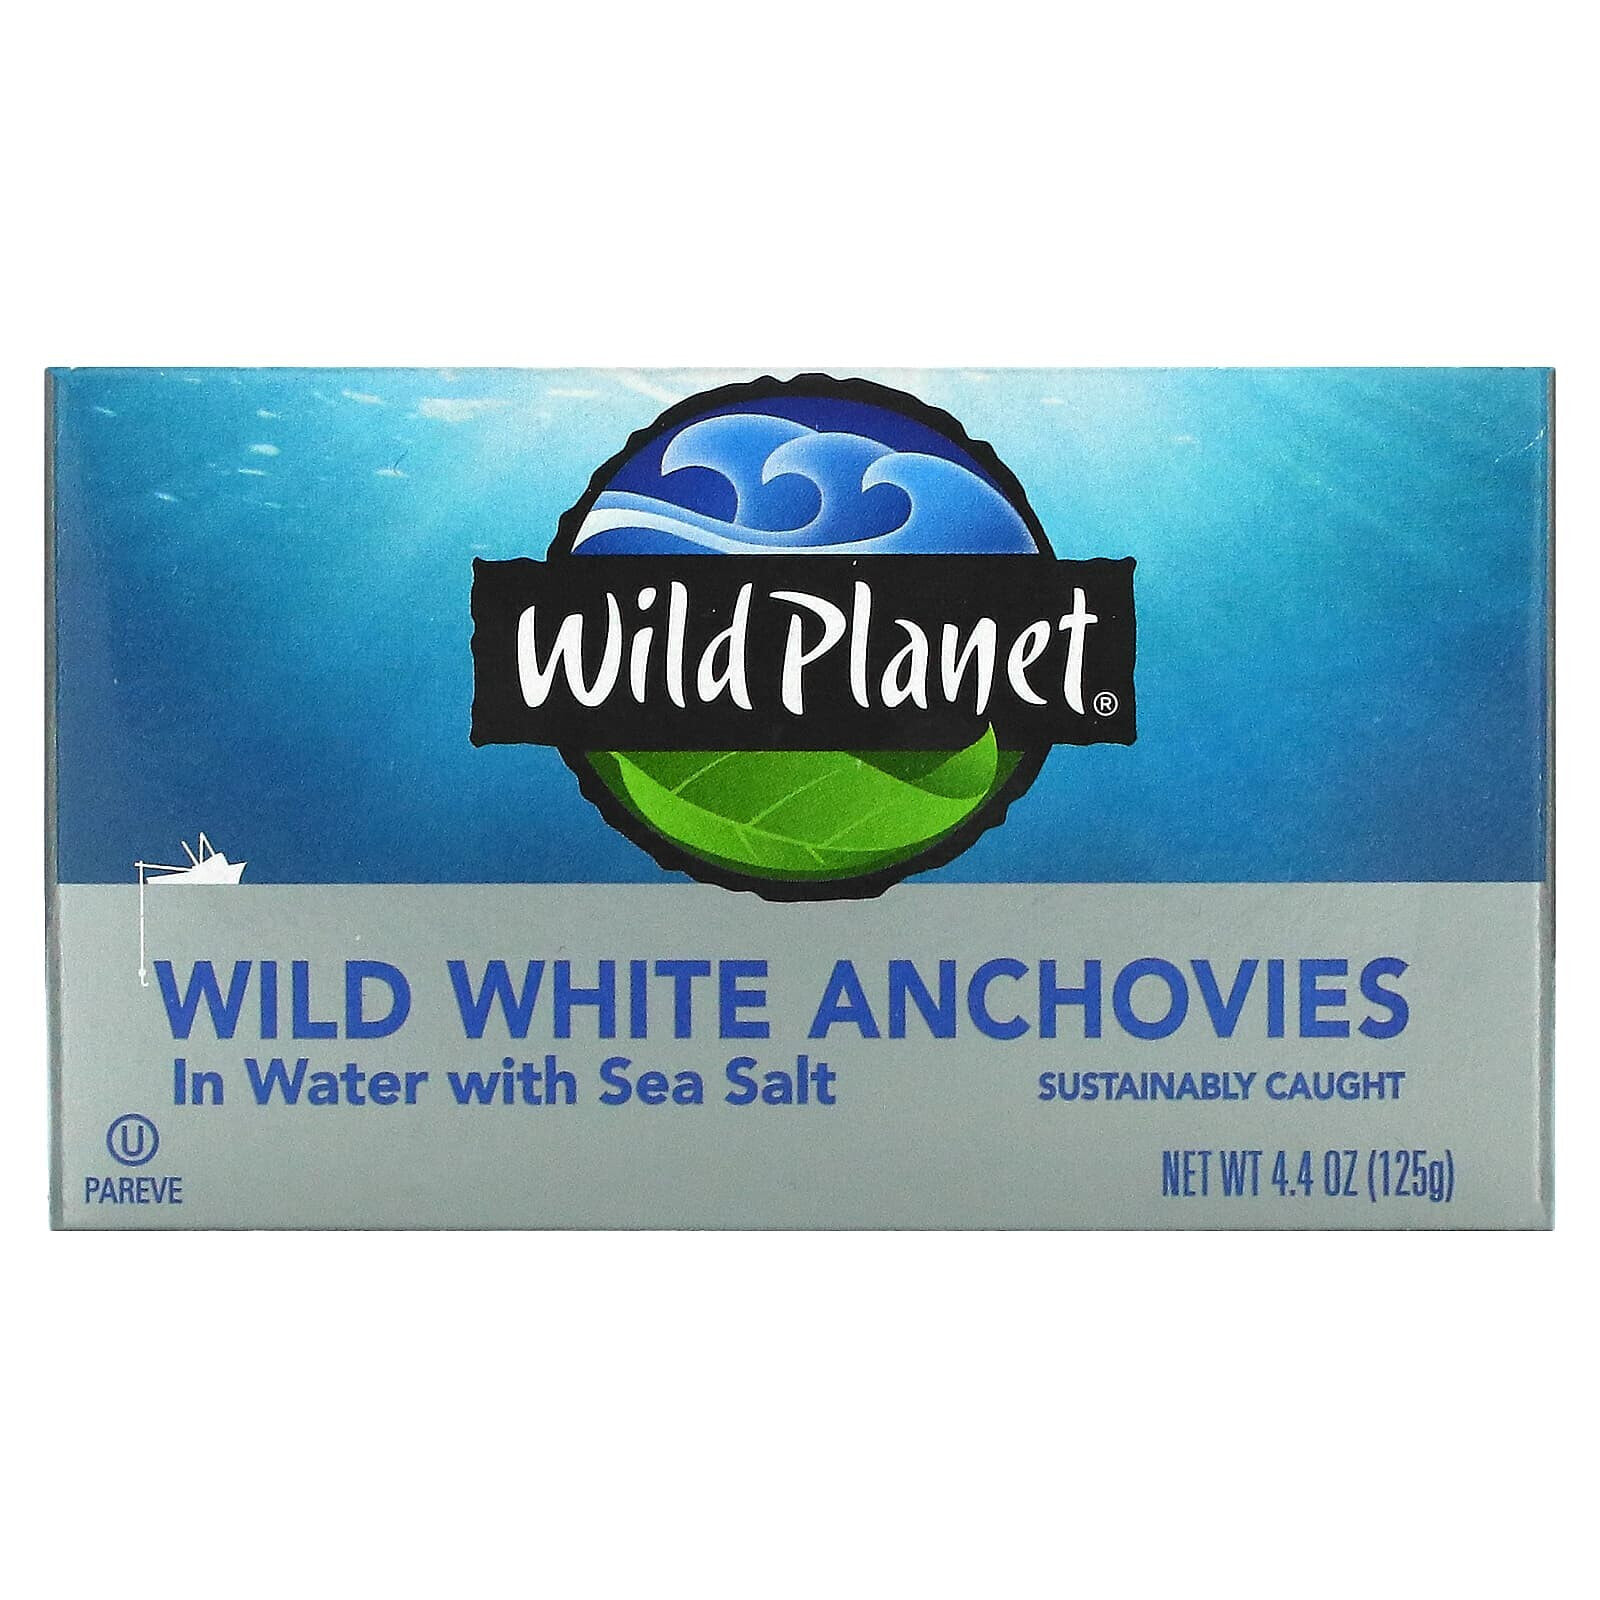 Вайлд Планет, Выловленные в диких условиях белые анчоусы в воде с морской солью, 4,4 унц. (125 г)